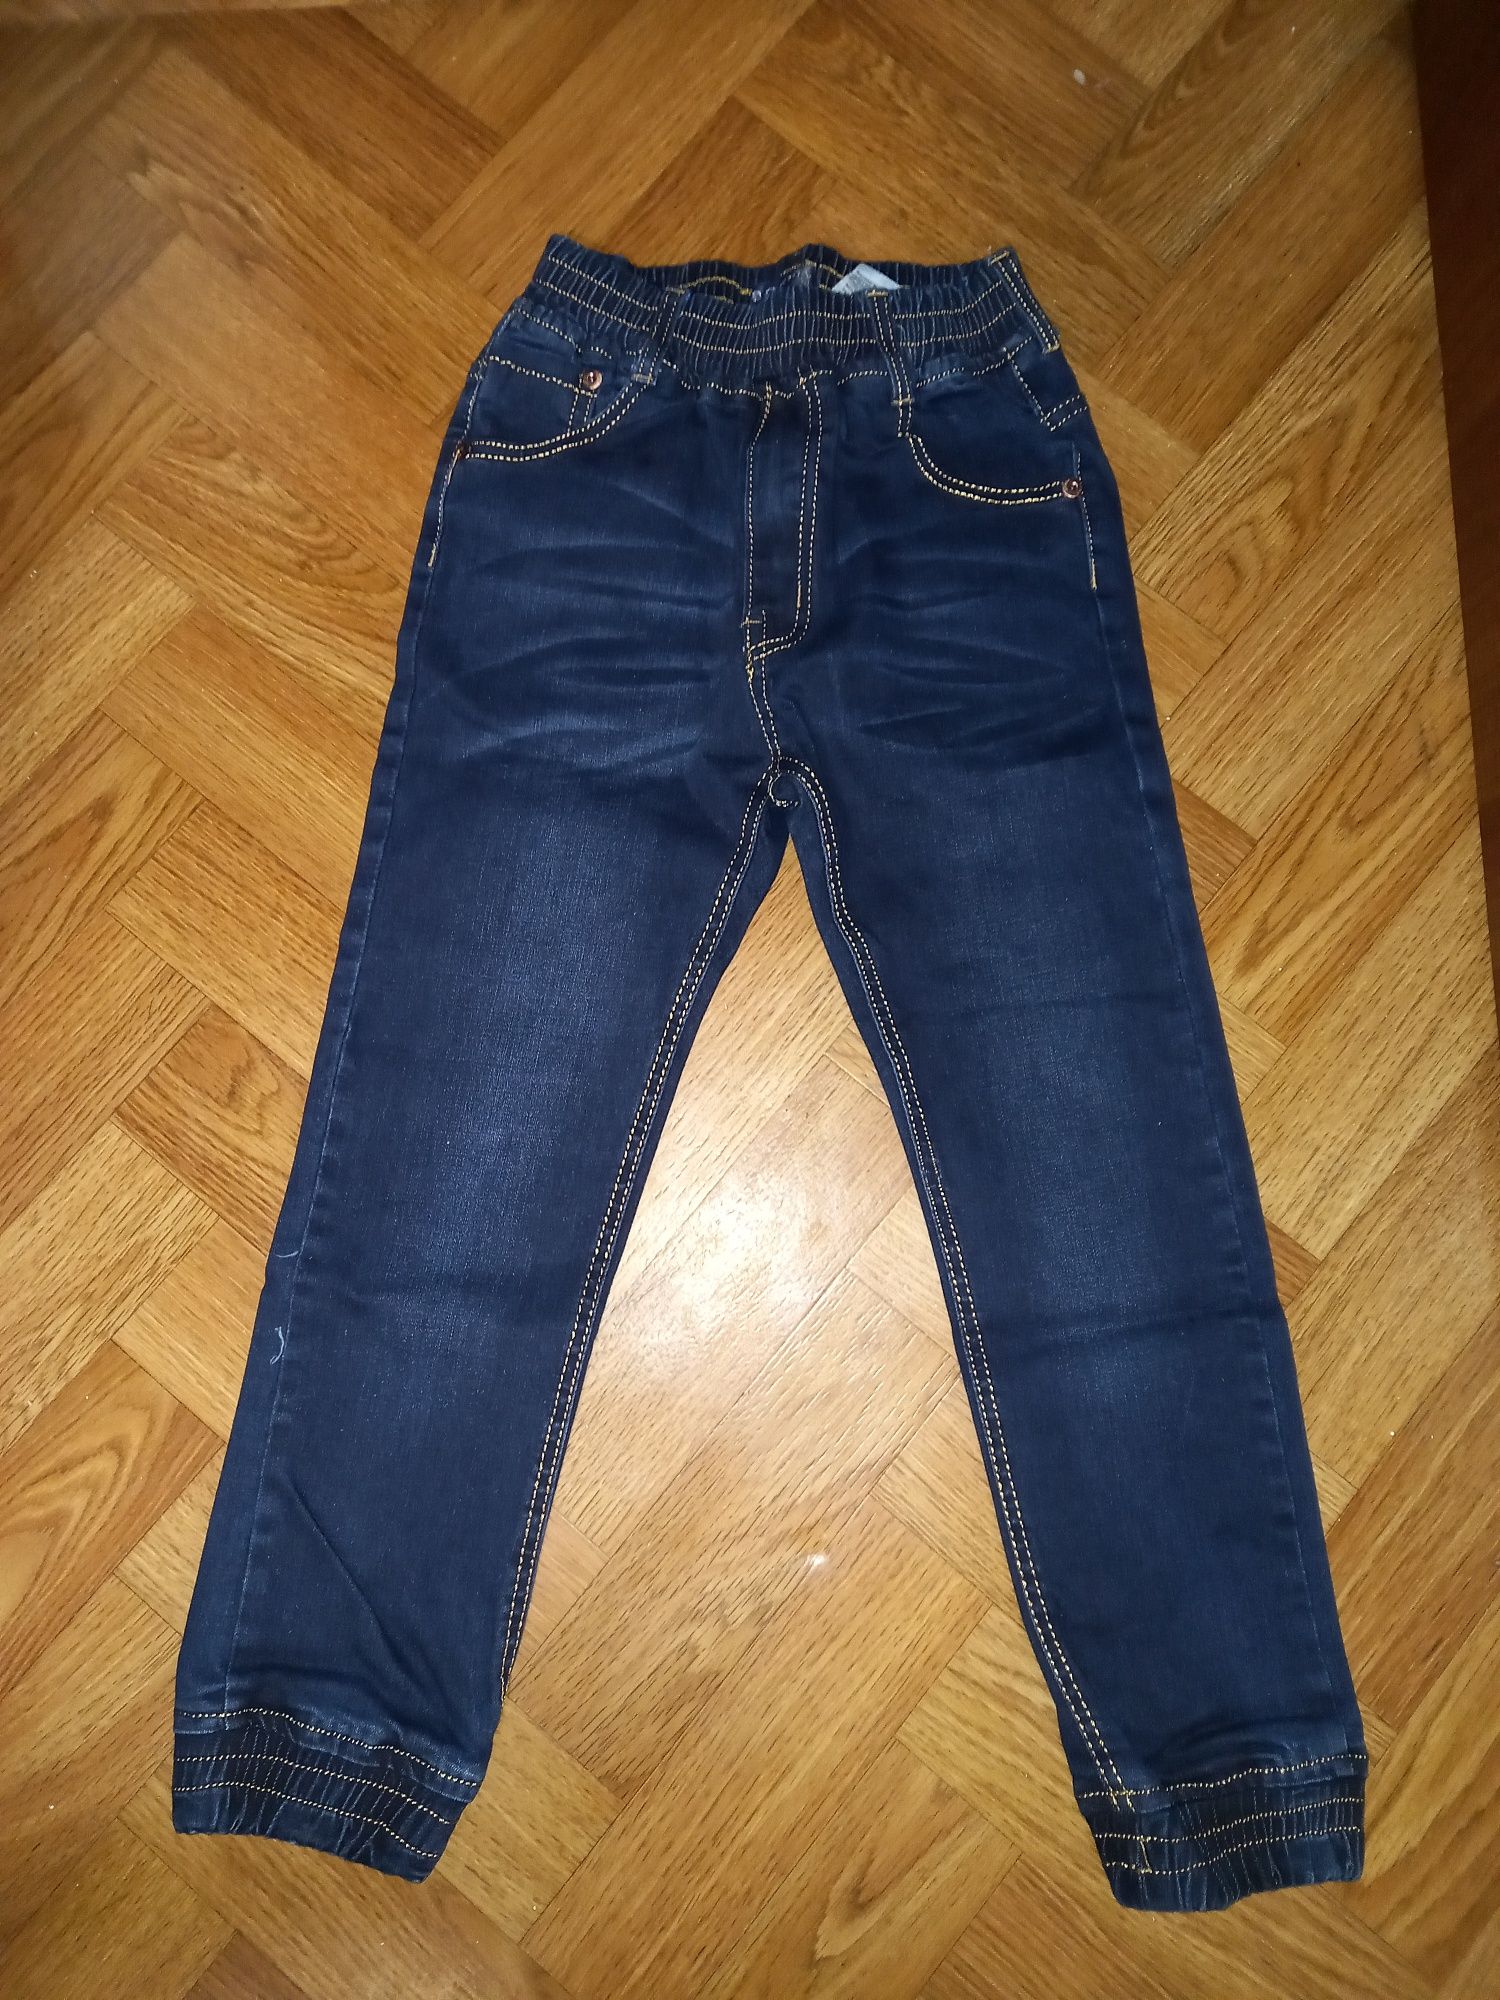 Новые синие джинсы джоггеры на резинке Венгрия